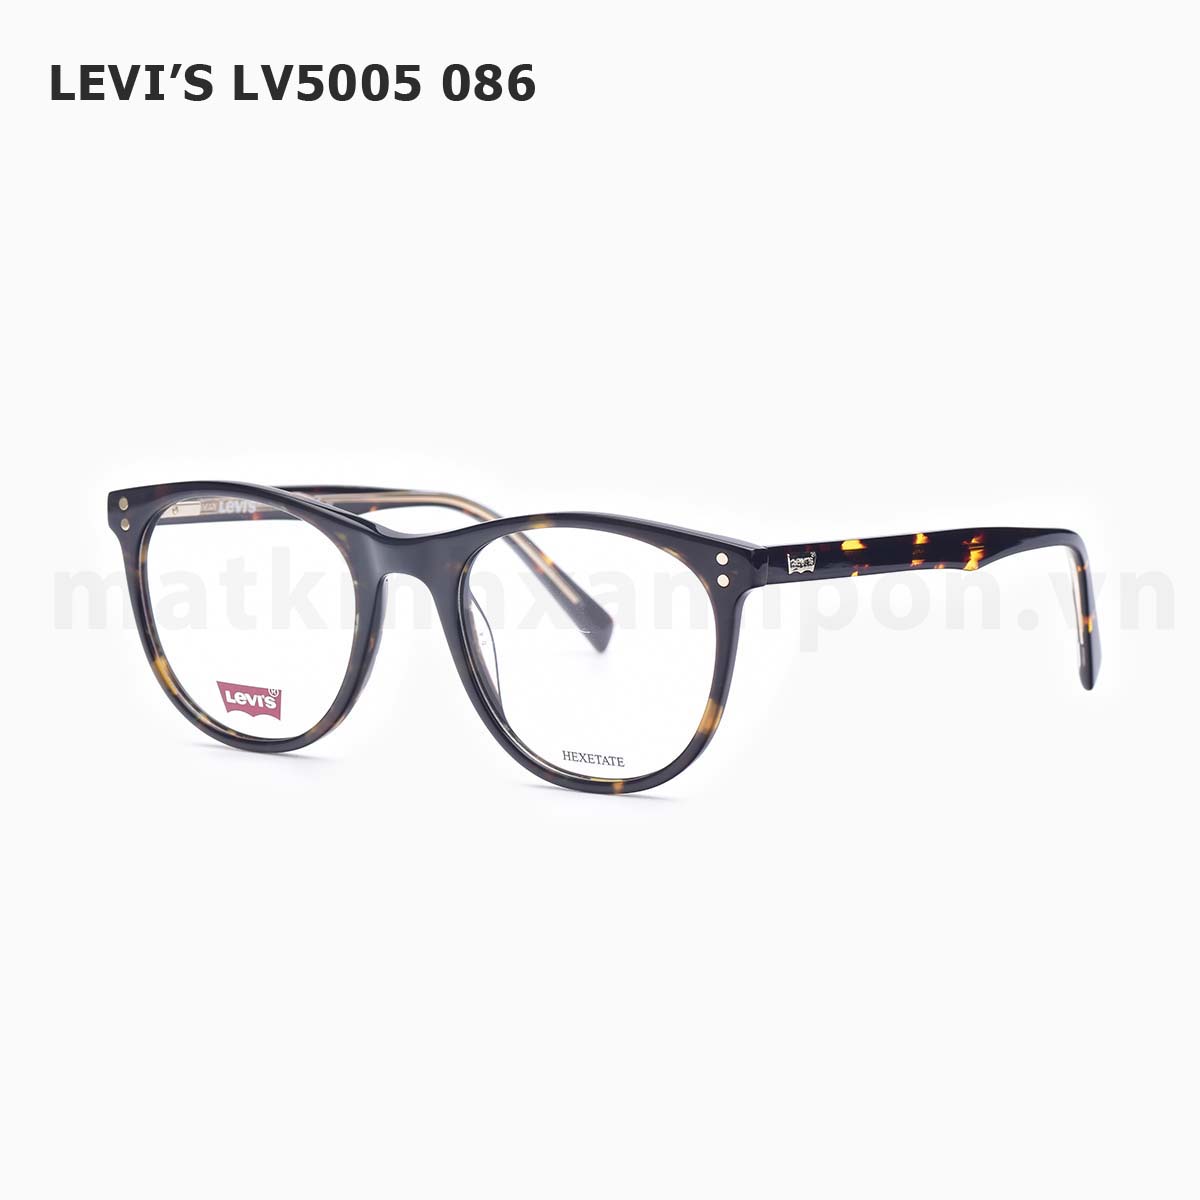 Levi’s LV5005 086